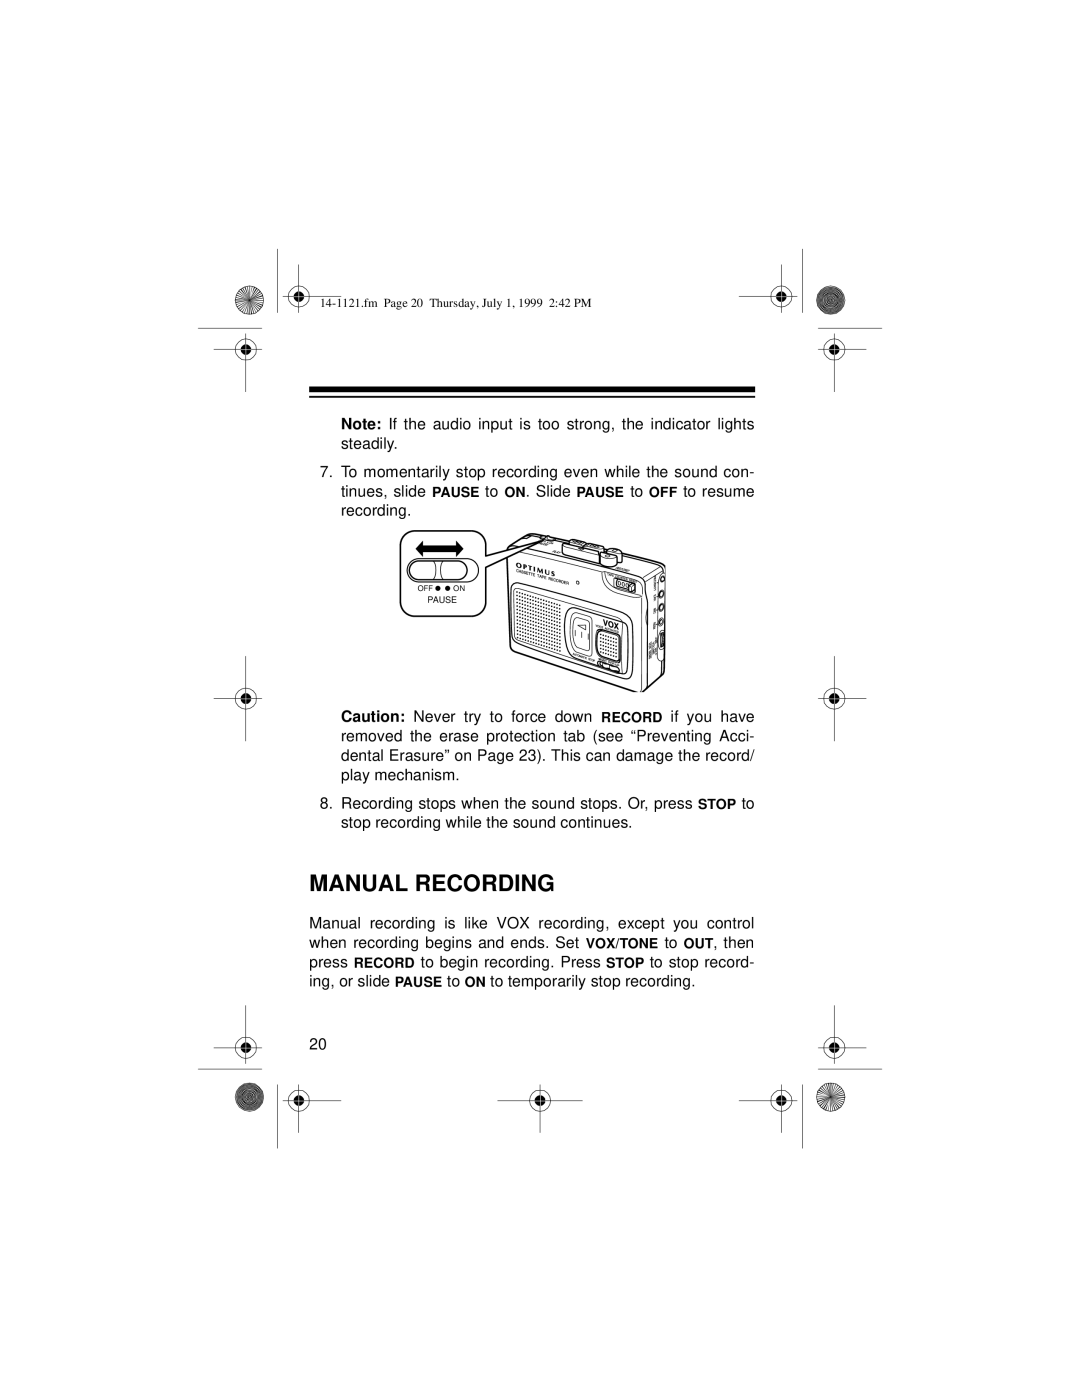 Optimus 2133-920-0-01, CTR-115, 14-1121 owner manual Manual Recording 